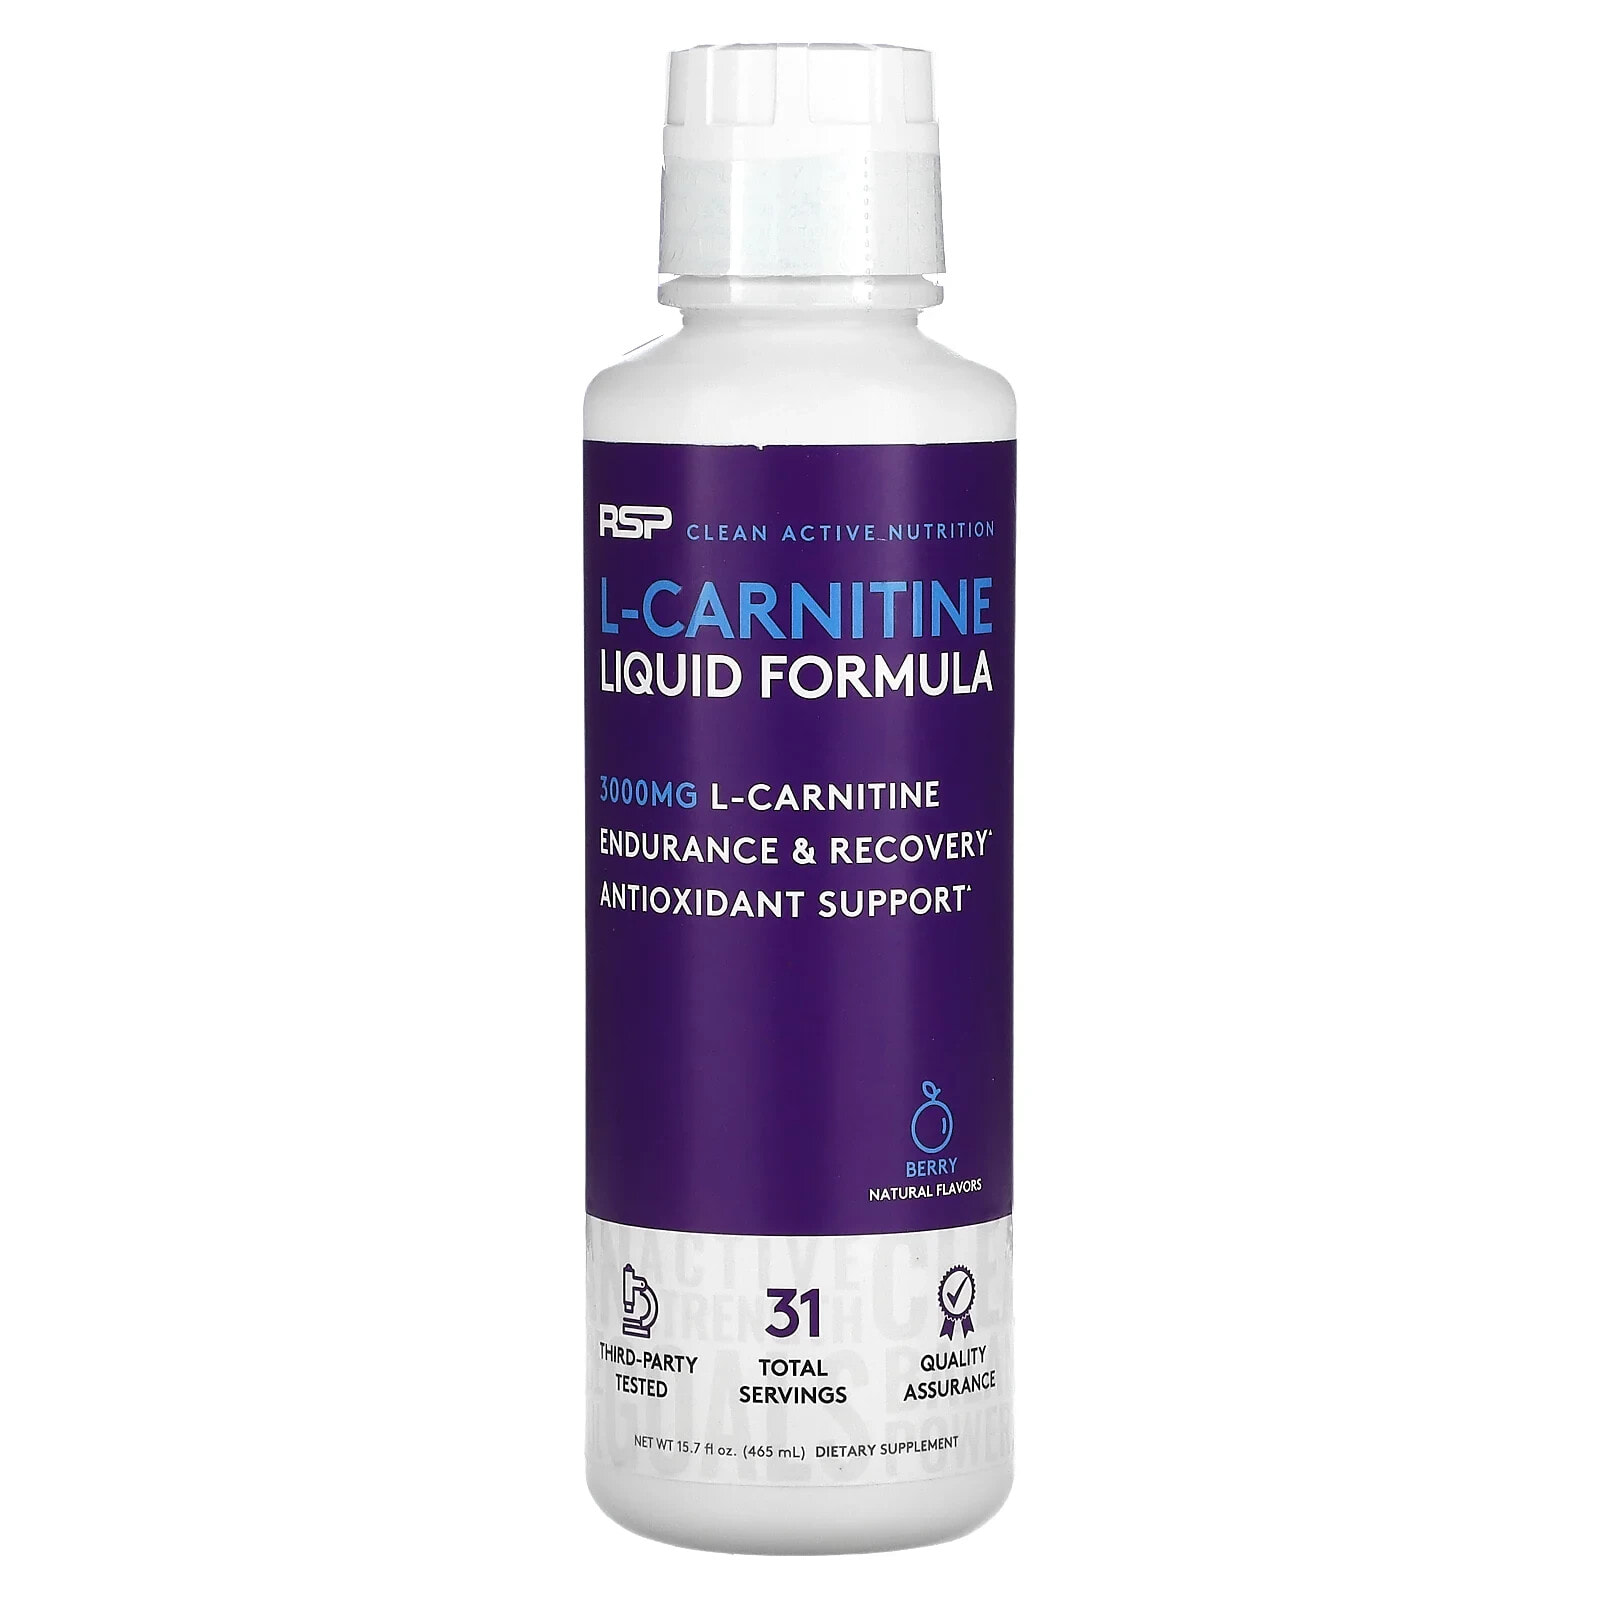 L-Carnitine Liquid Formula, Berry, 3,000 mg, 15.7 fl oz (465 ml)